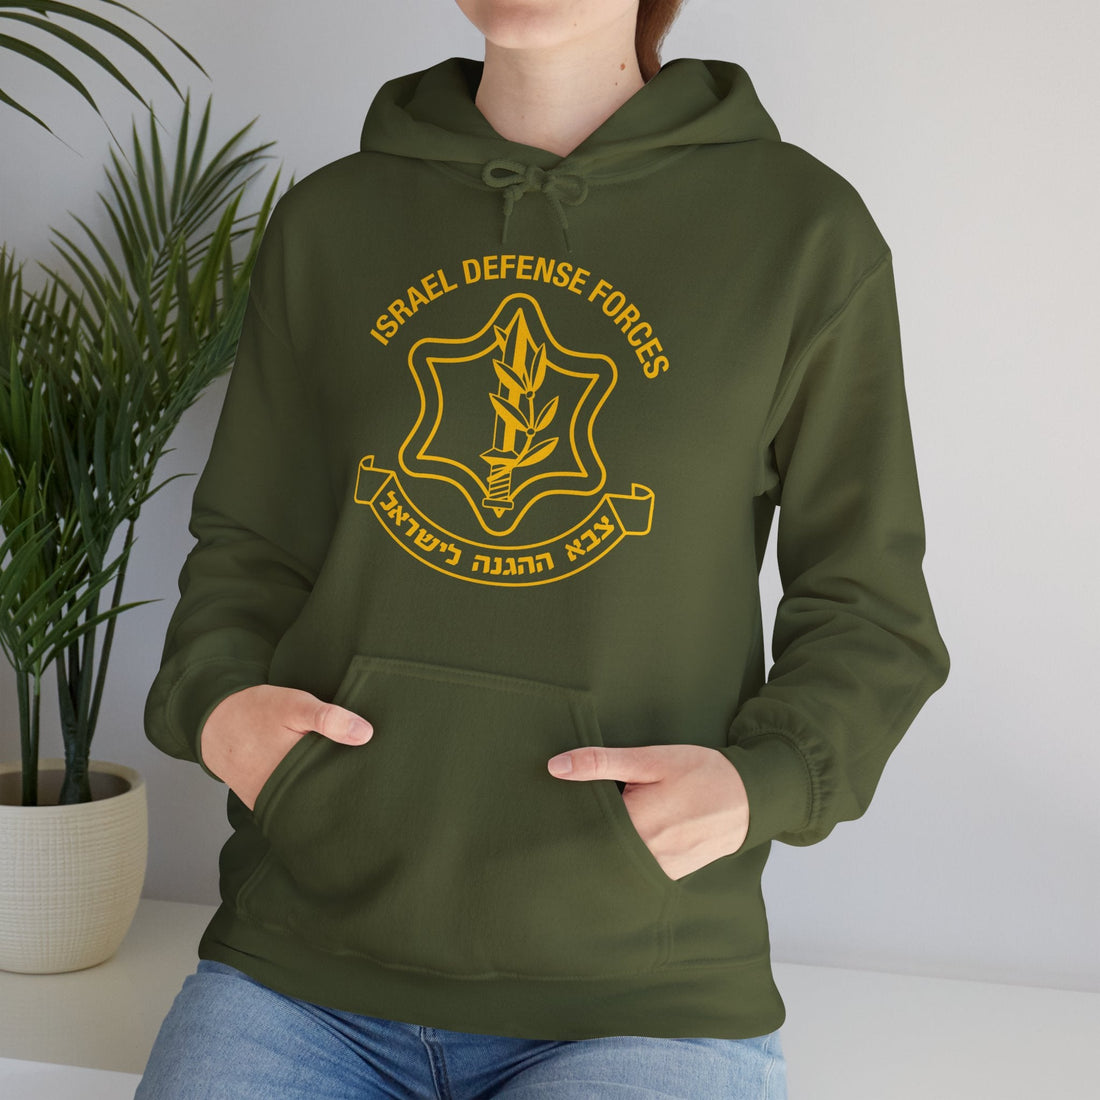 IDF Sweatshirt - Shop Israel